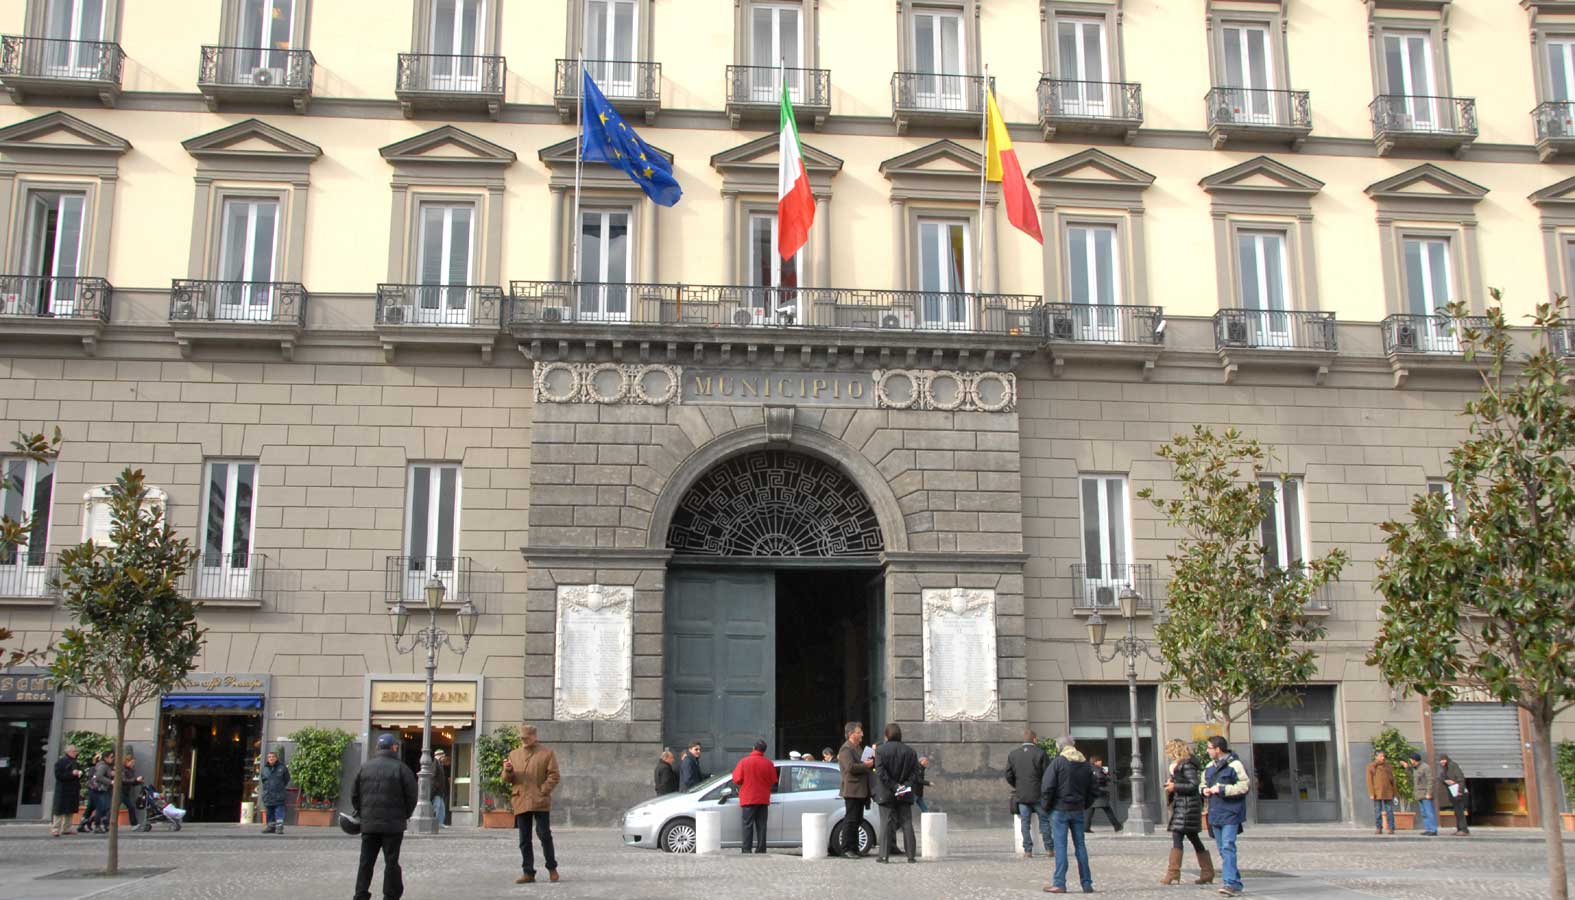 Palazzo San Giacomo